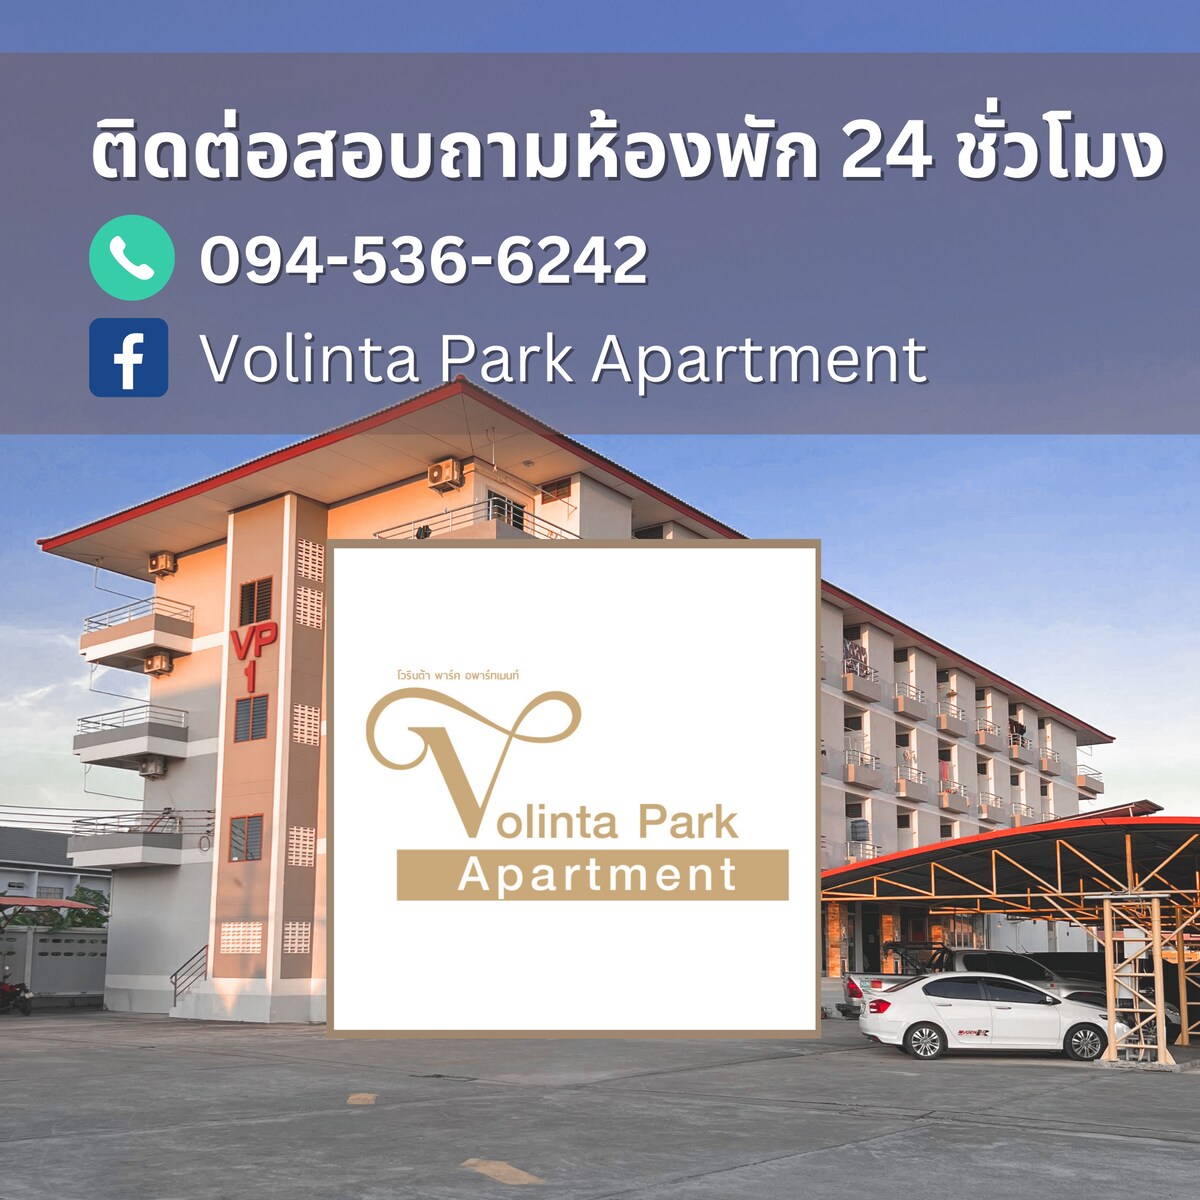 Volinta Park Apartment